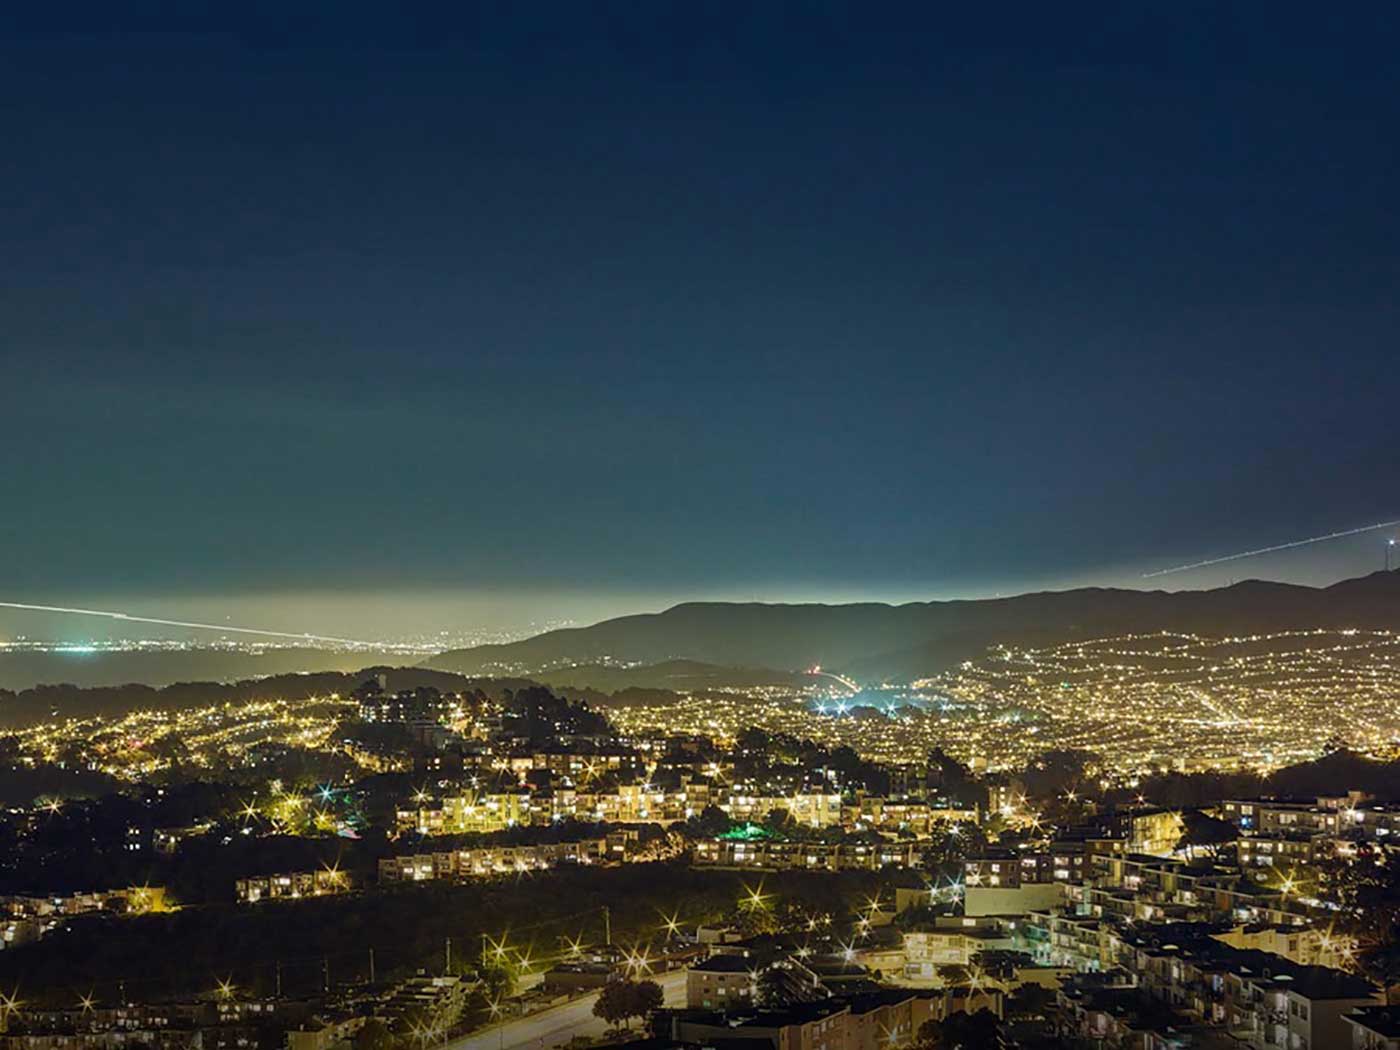 San Jose at night